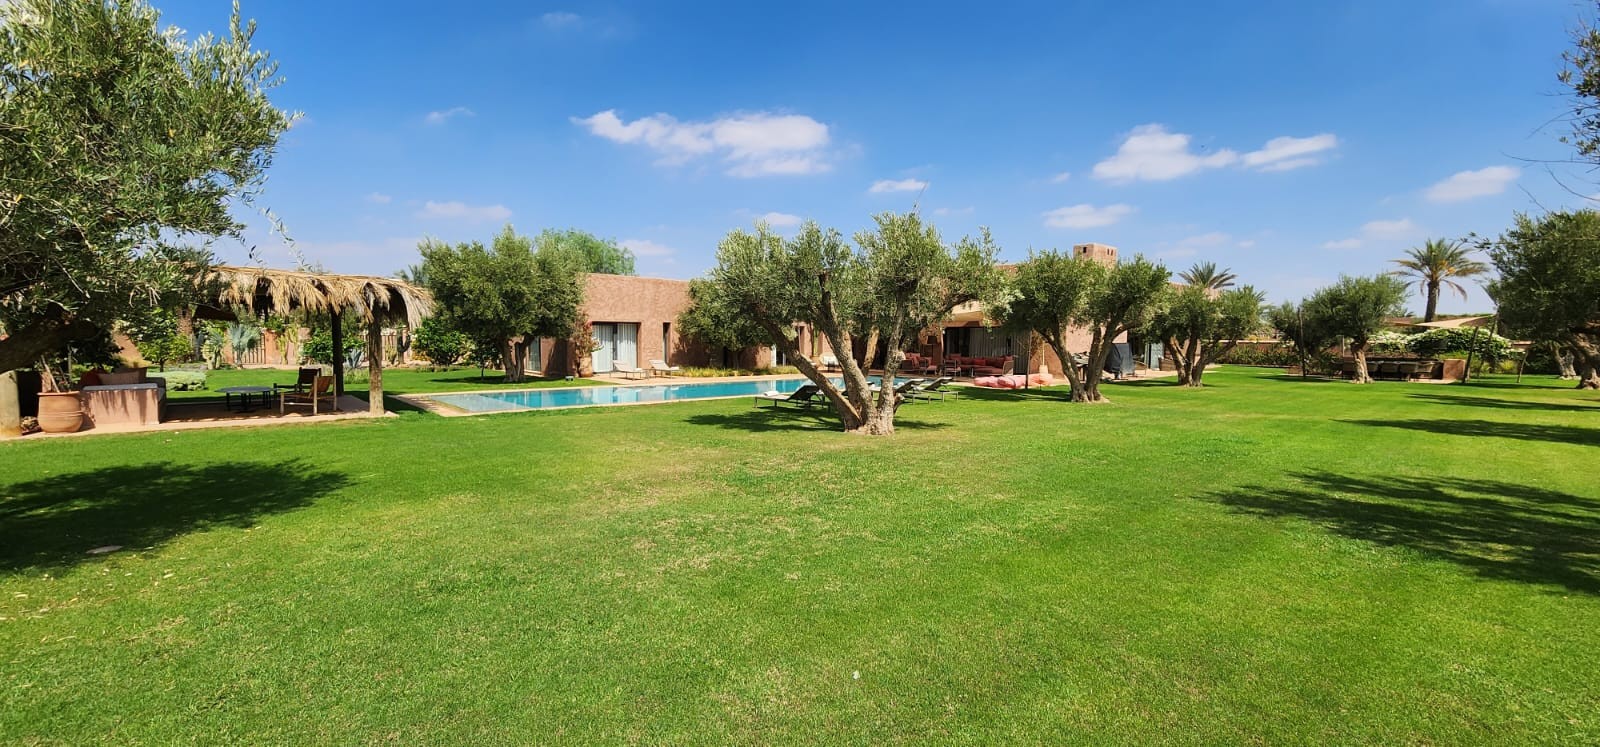 Villa Benjy for rent in Marrakech